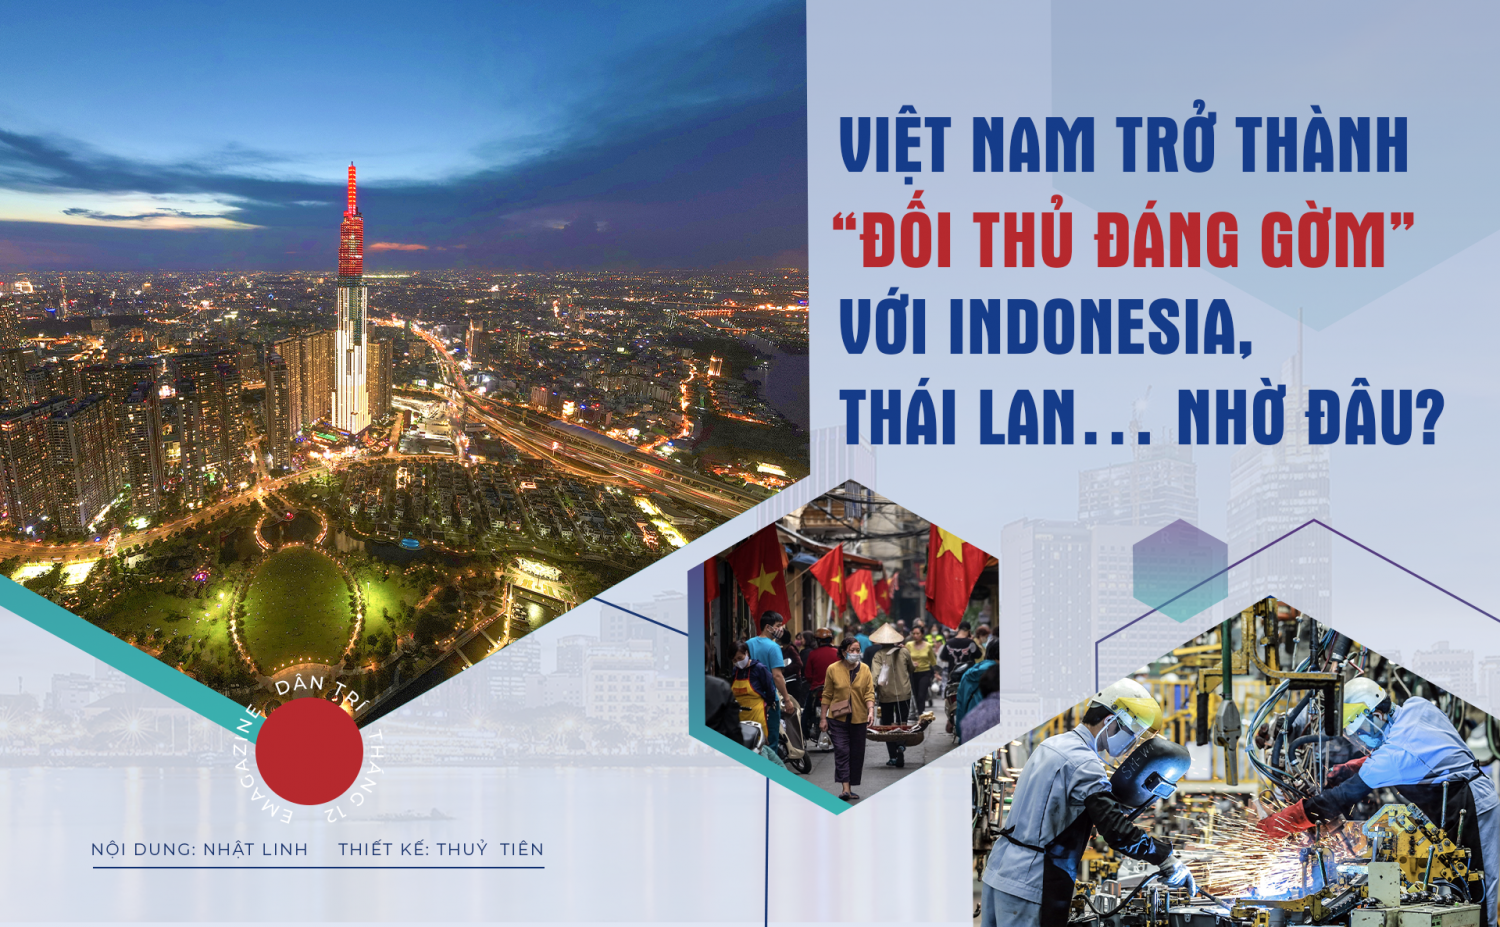 Bao giờ kinh tế Việt Nam vượt Thái Lan và Indonesia?